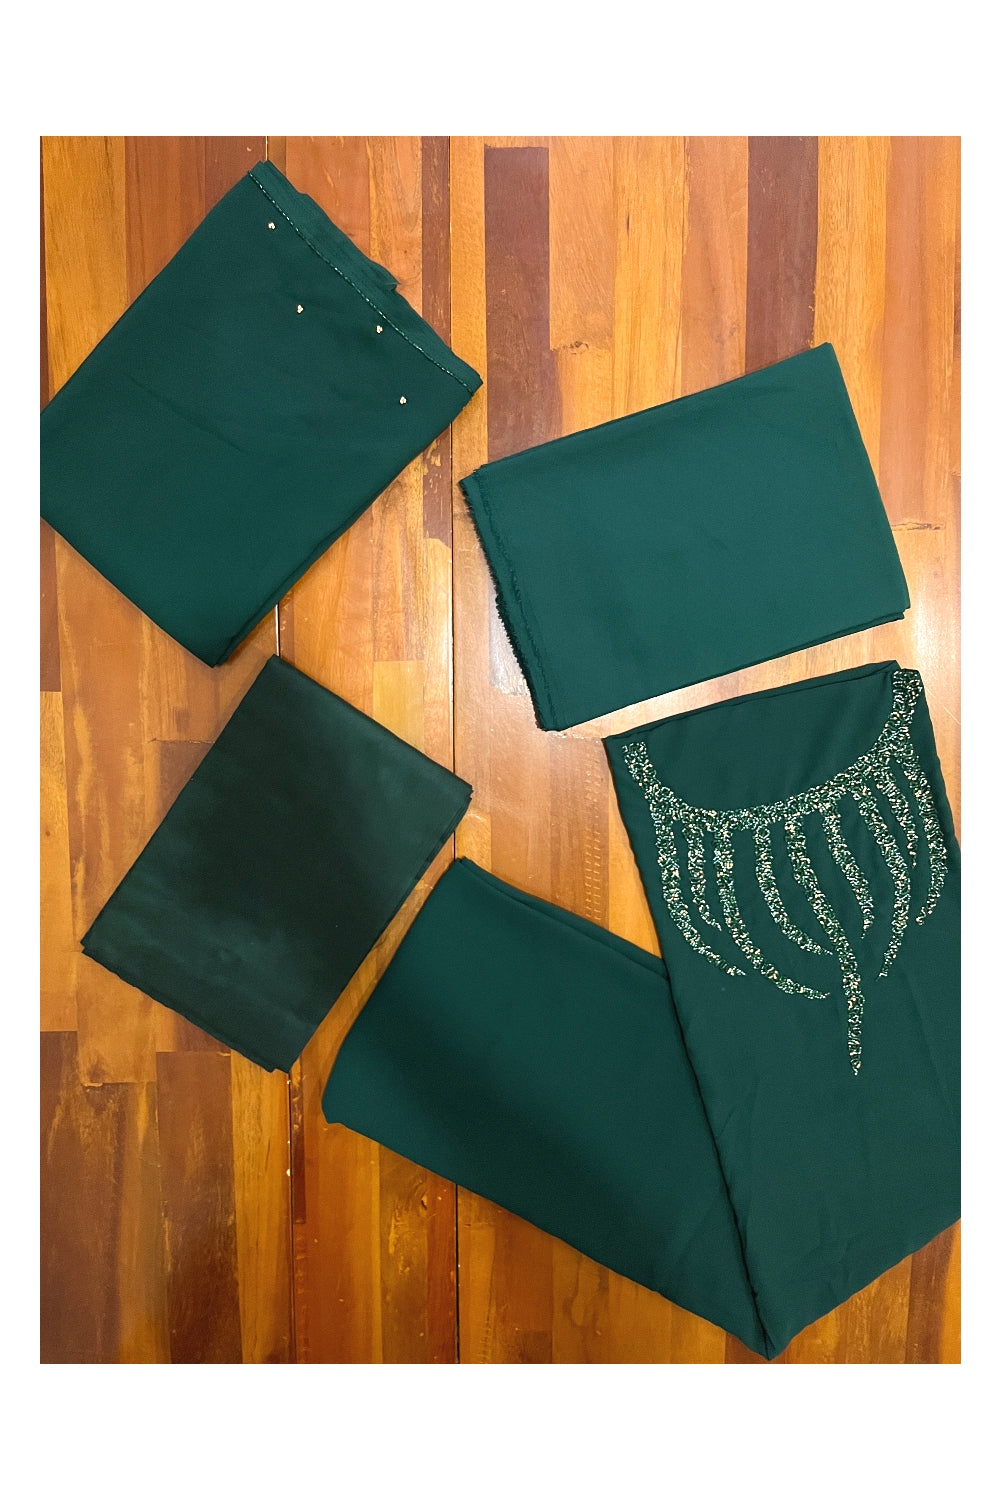 Southloom™ Georgette Churidar Salwar Suit Material in Dark Green with Bead Works